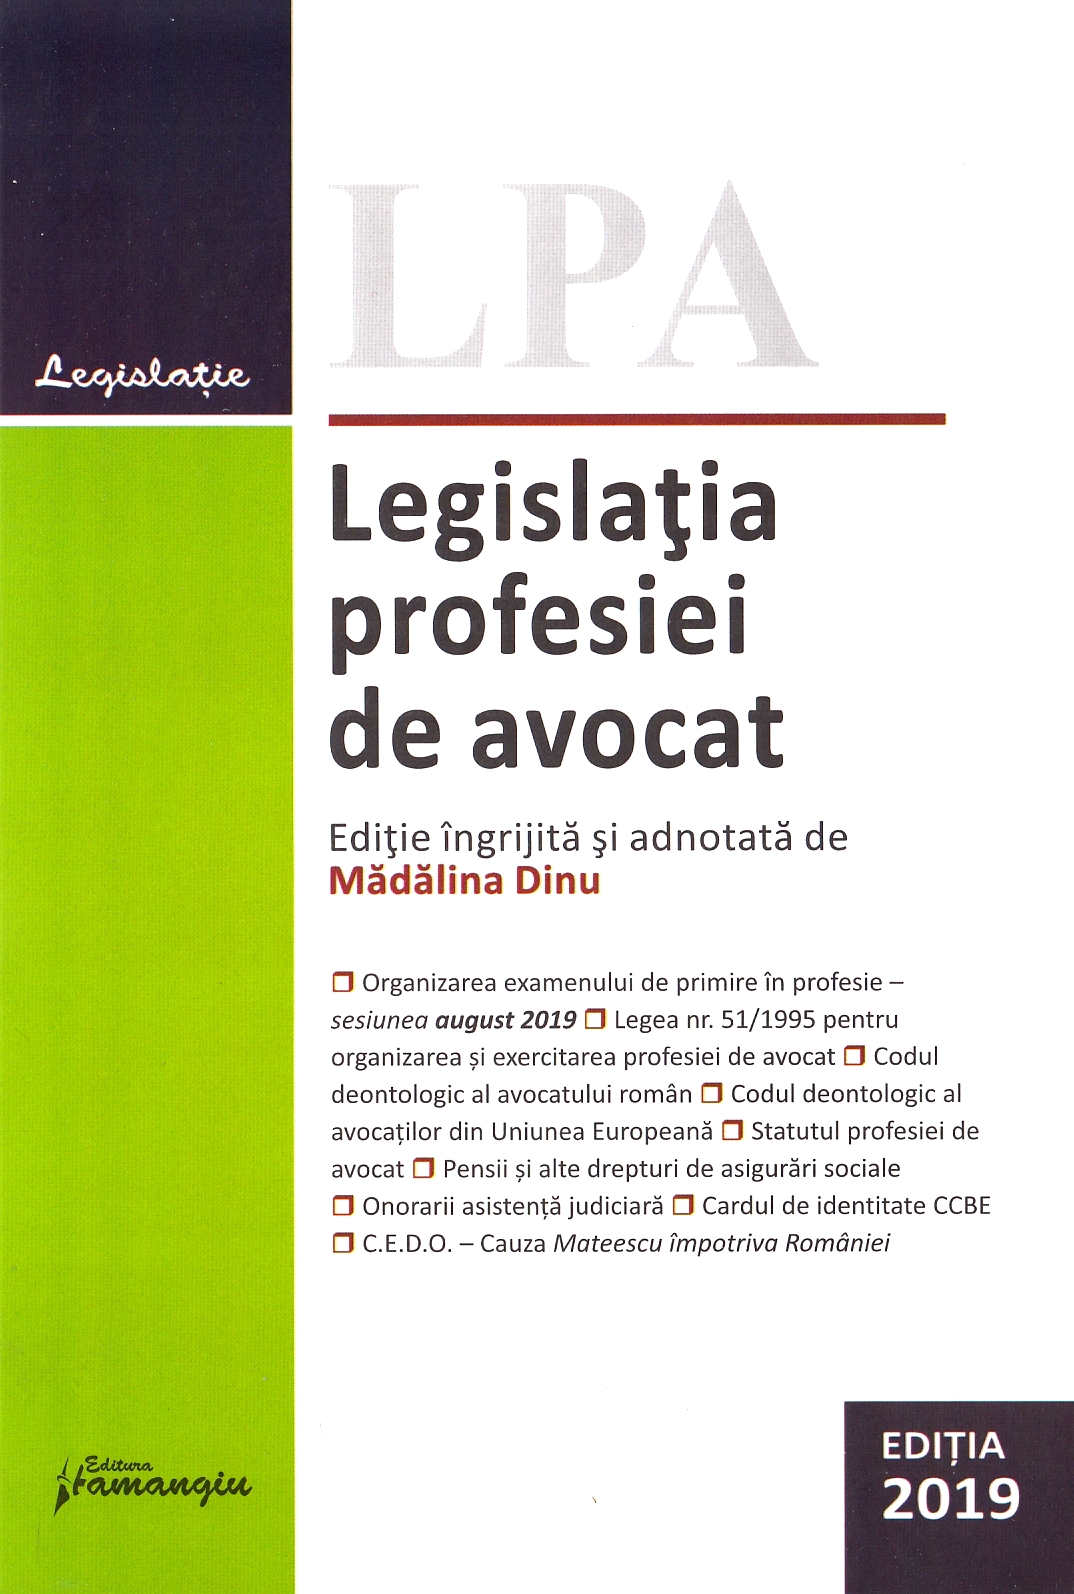 Legislatia profesiei de avocat Act. 21.06.2019